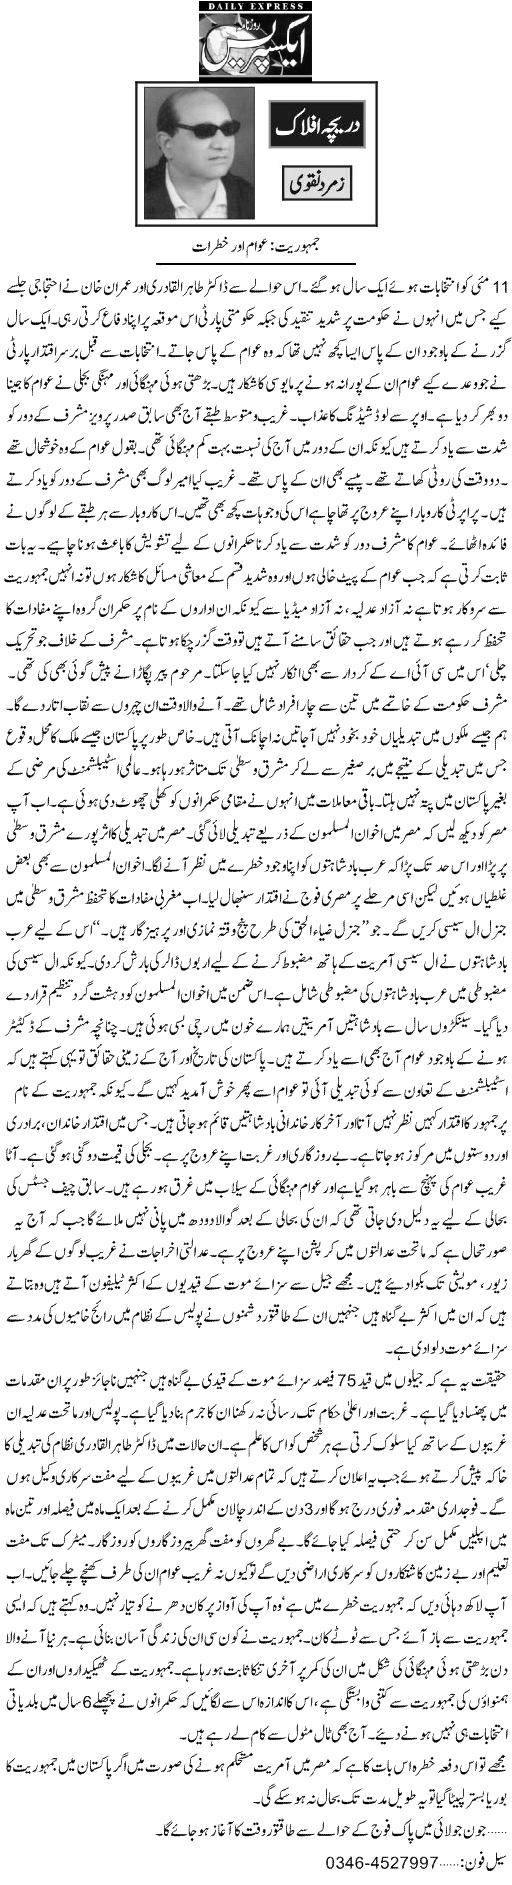 Minhaj-ul-Quran  Print Media Coverage Daily Express - Zamurd Naqvi